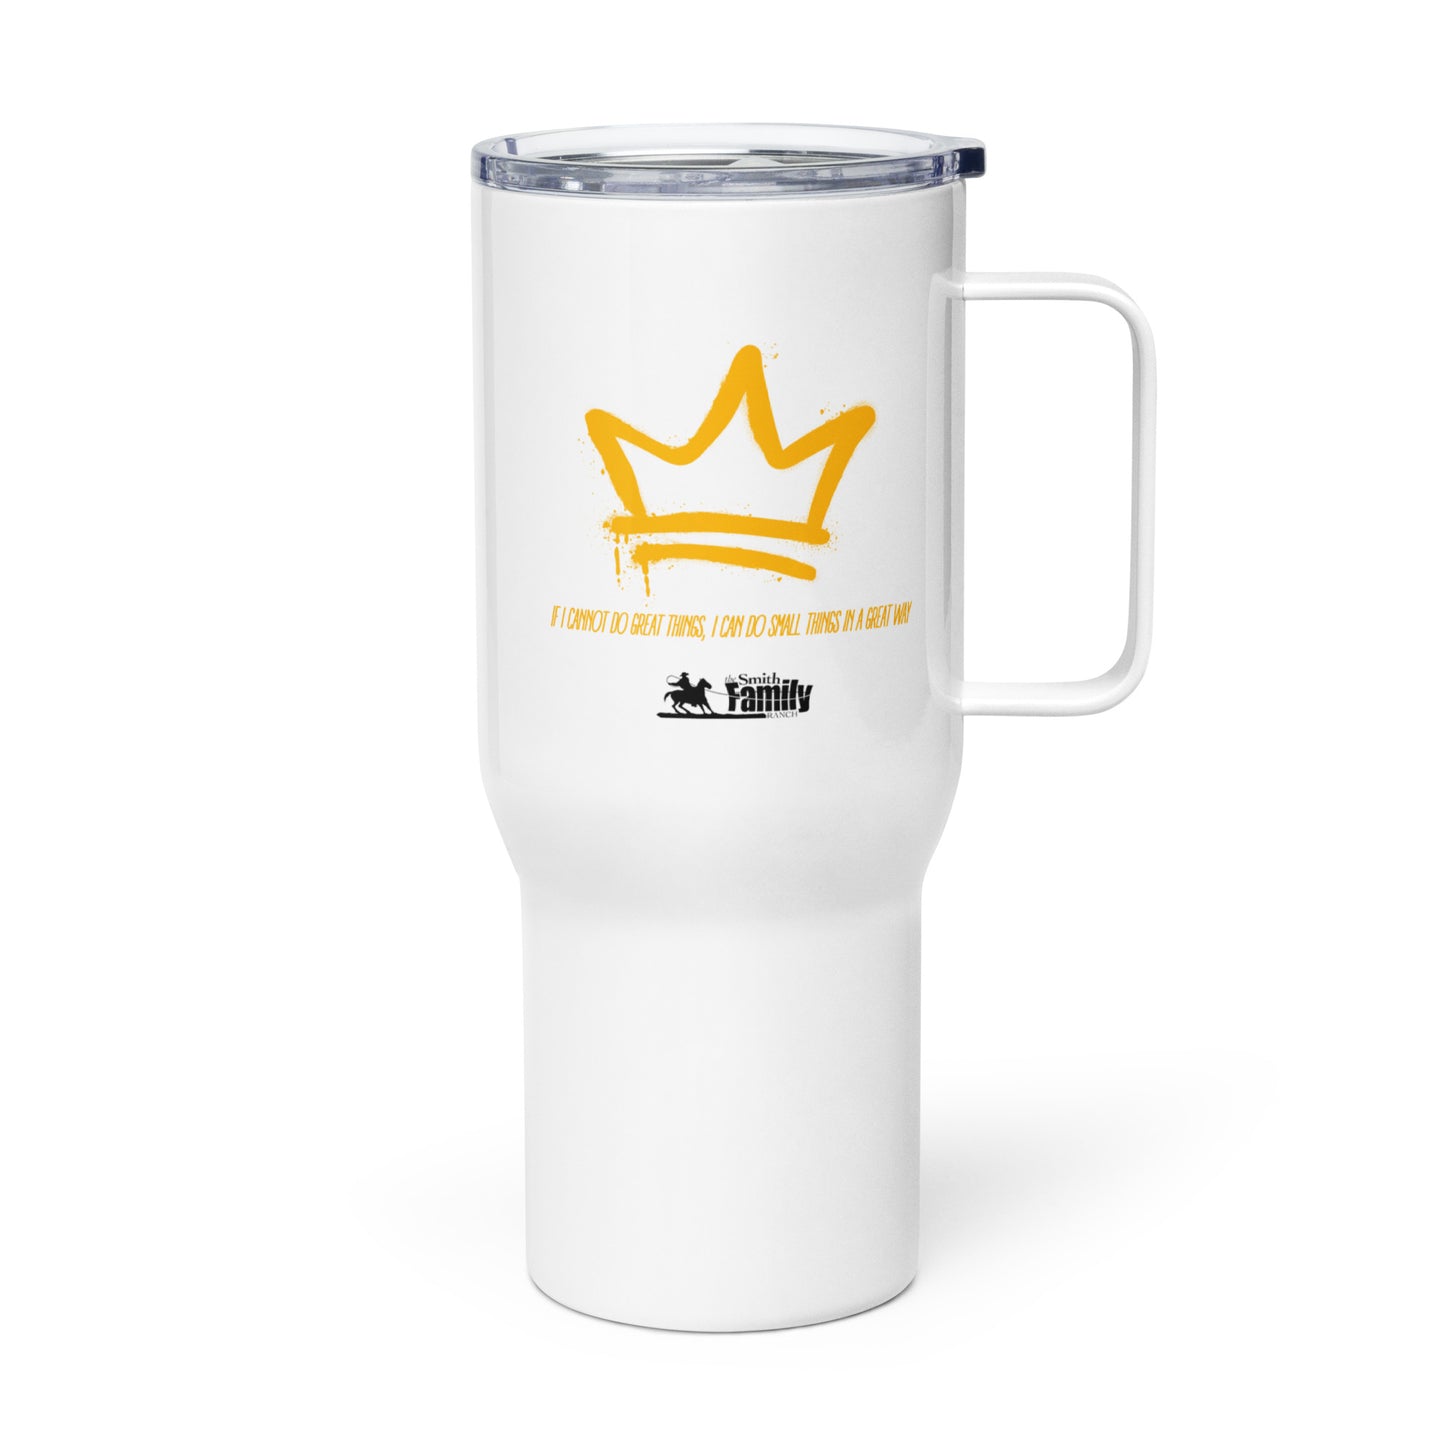 Travel mug (Gold Crown)